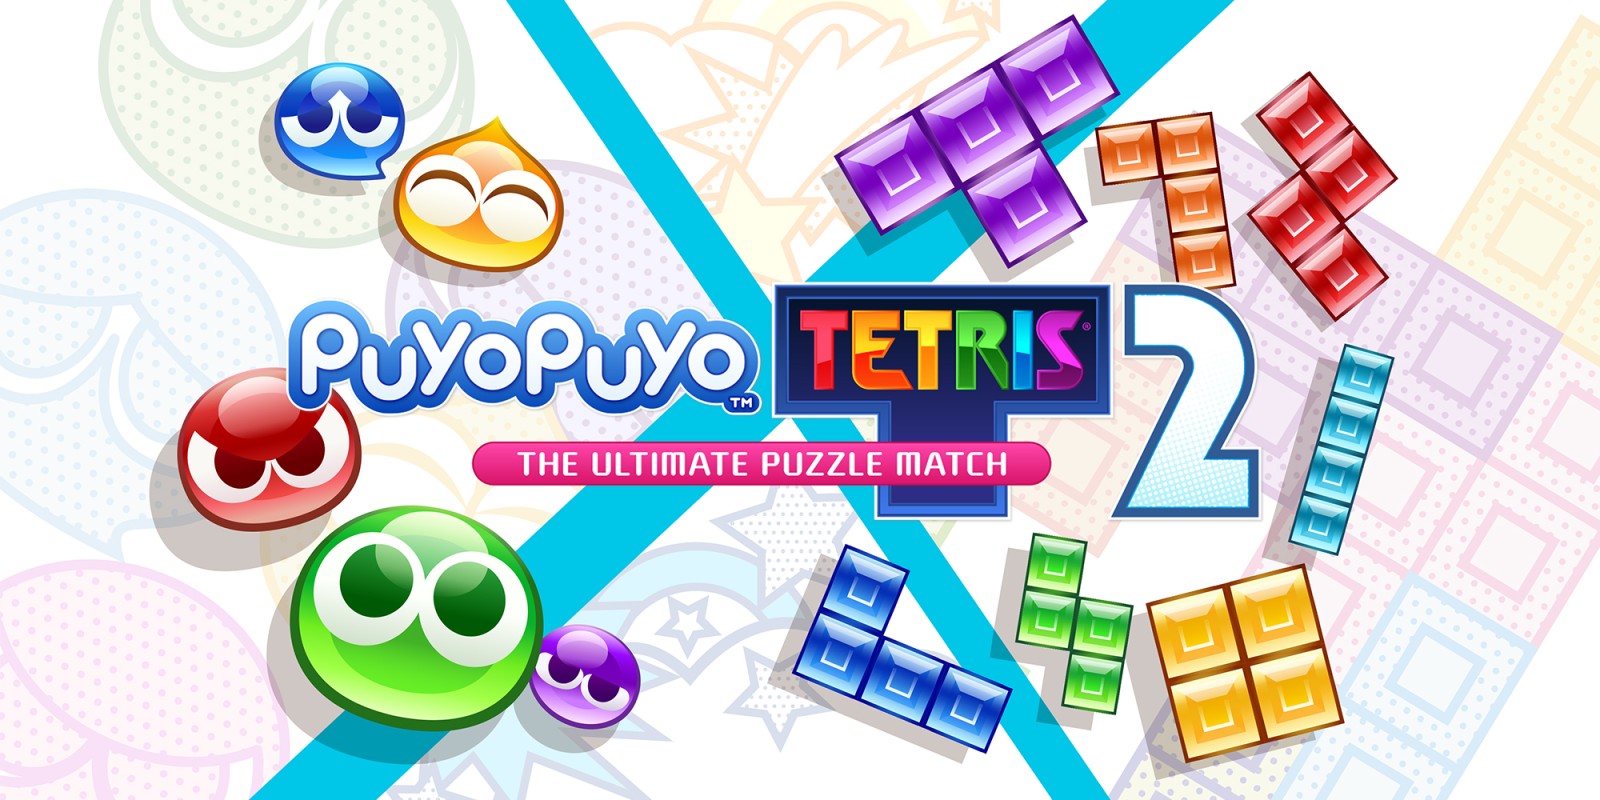 Update final de Puyo Puyo Tetris 2 chega hoje a todas as plataformas